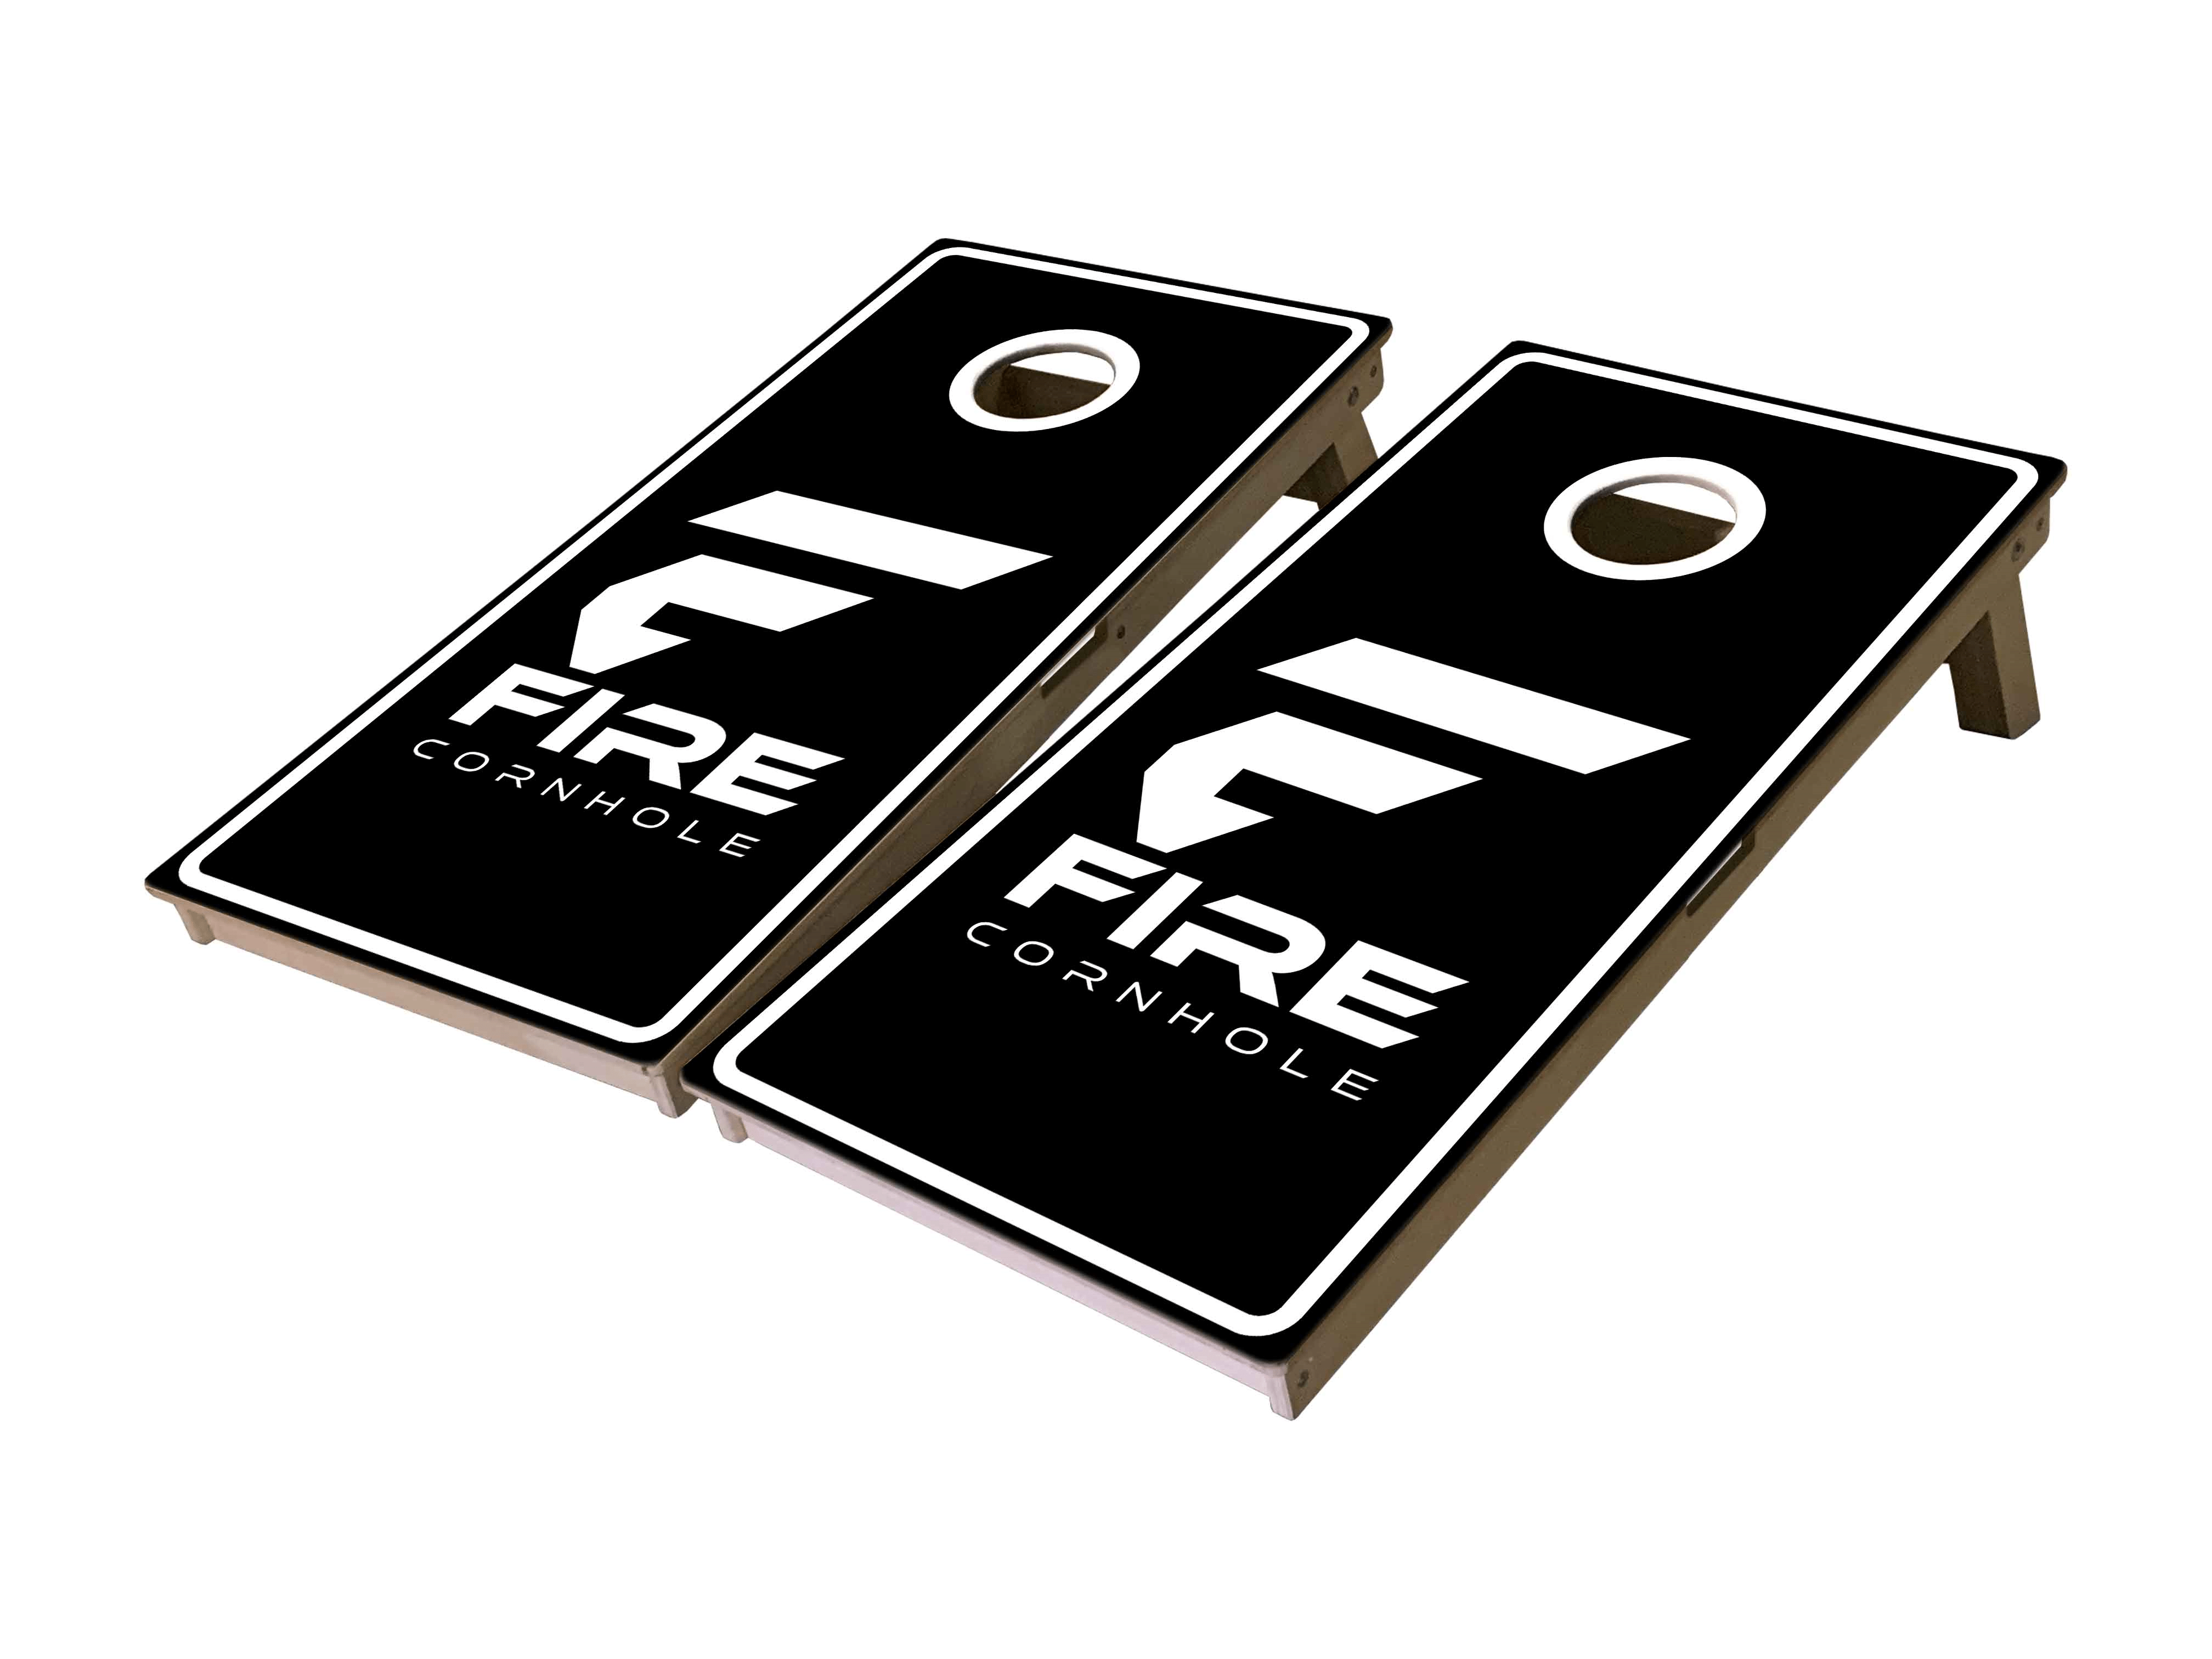 Fire Cornhole Mini Cornhole Boards in black and white